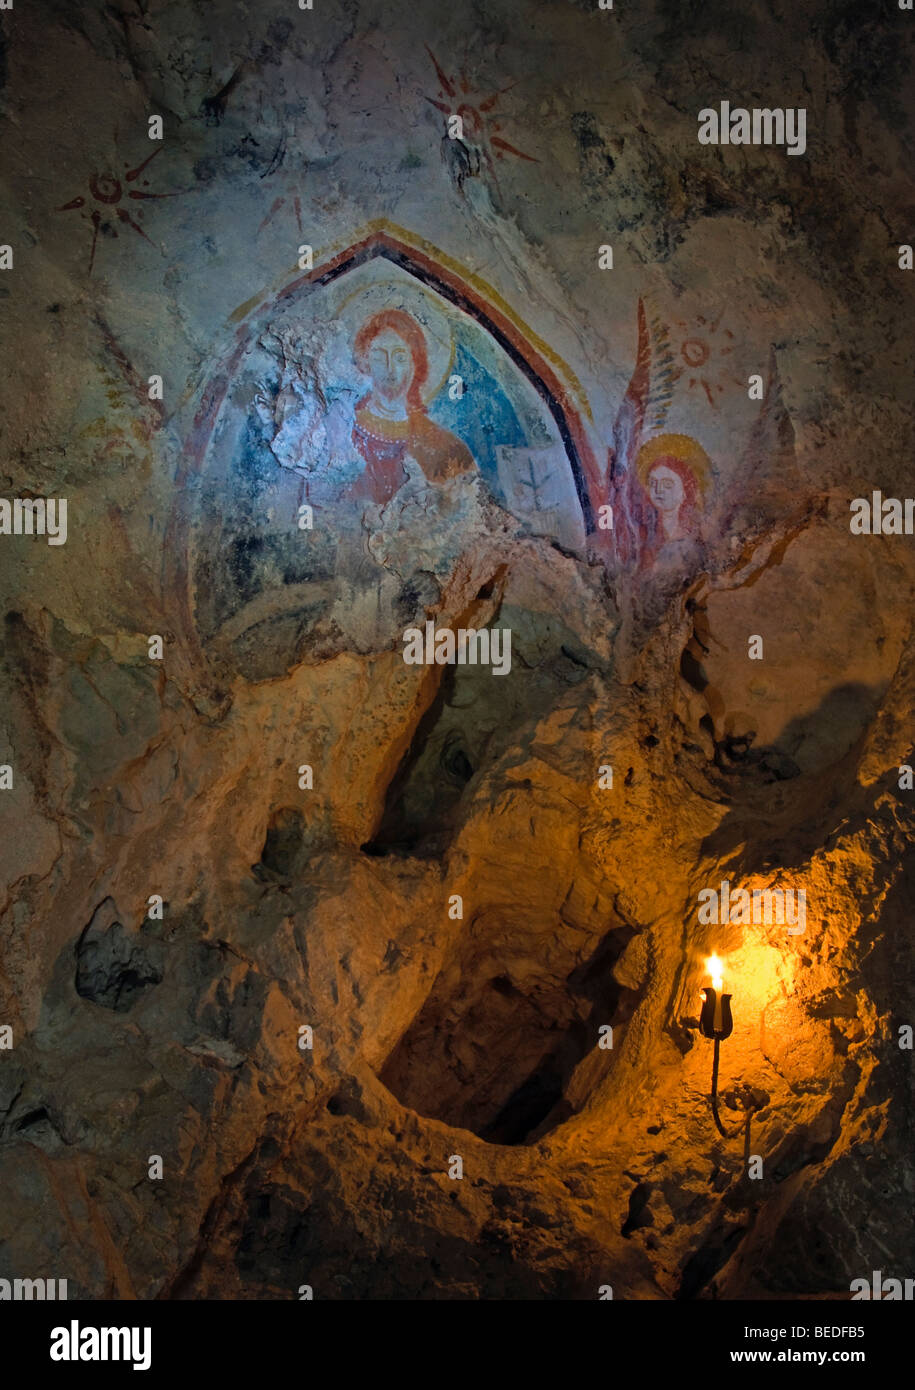 Immagine sacra nella grotta. Foto Stock